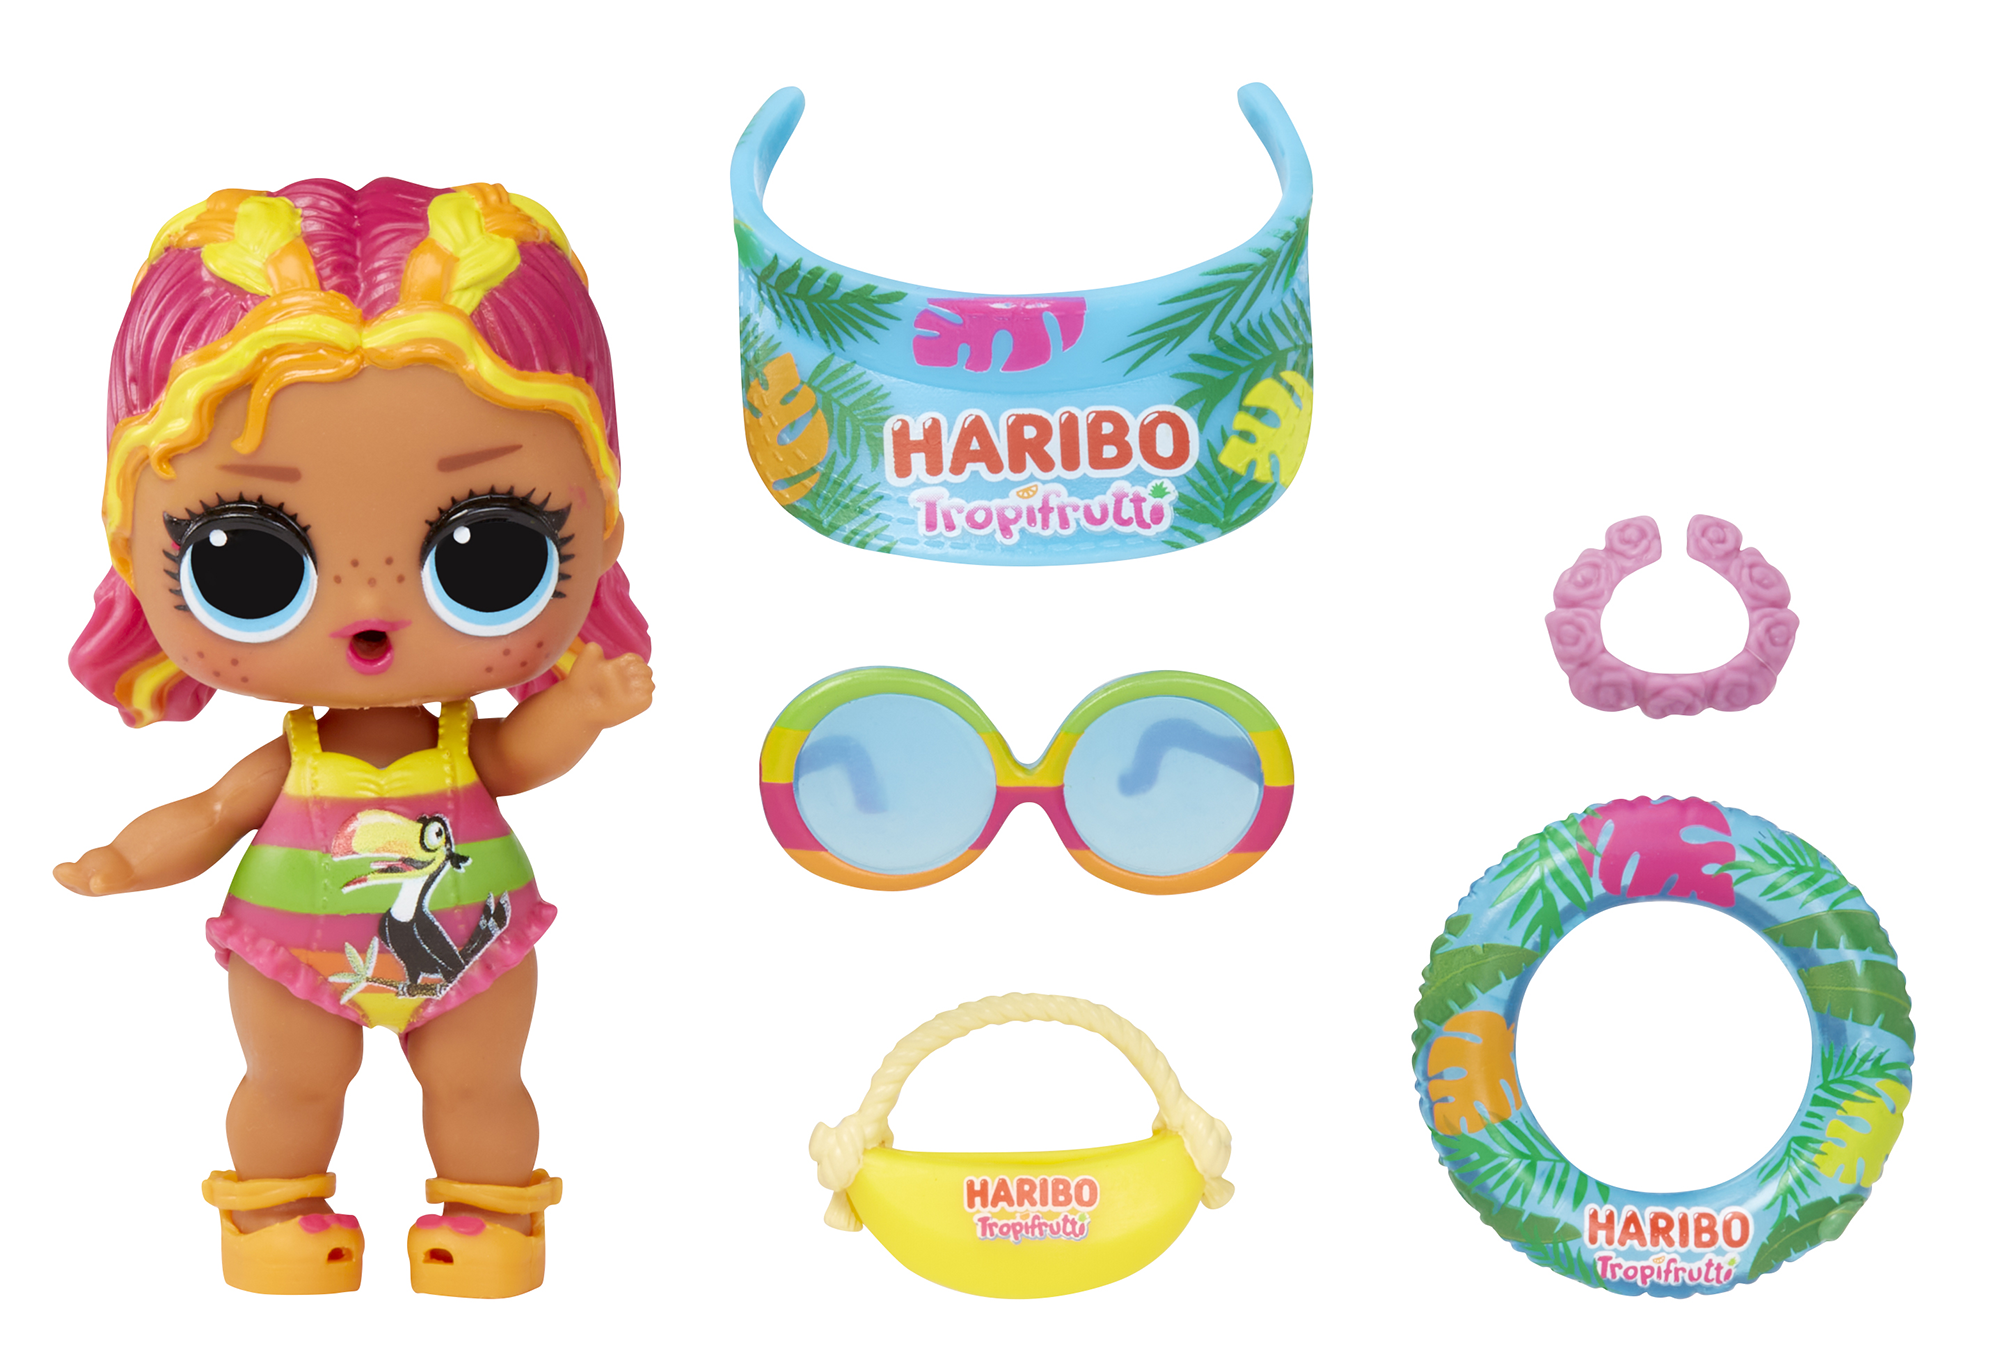 Lol surprise - loves mini sweets serie x haribo - include 1 bambola a tema caramelle e accessori divertenti - LOL